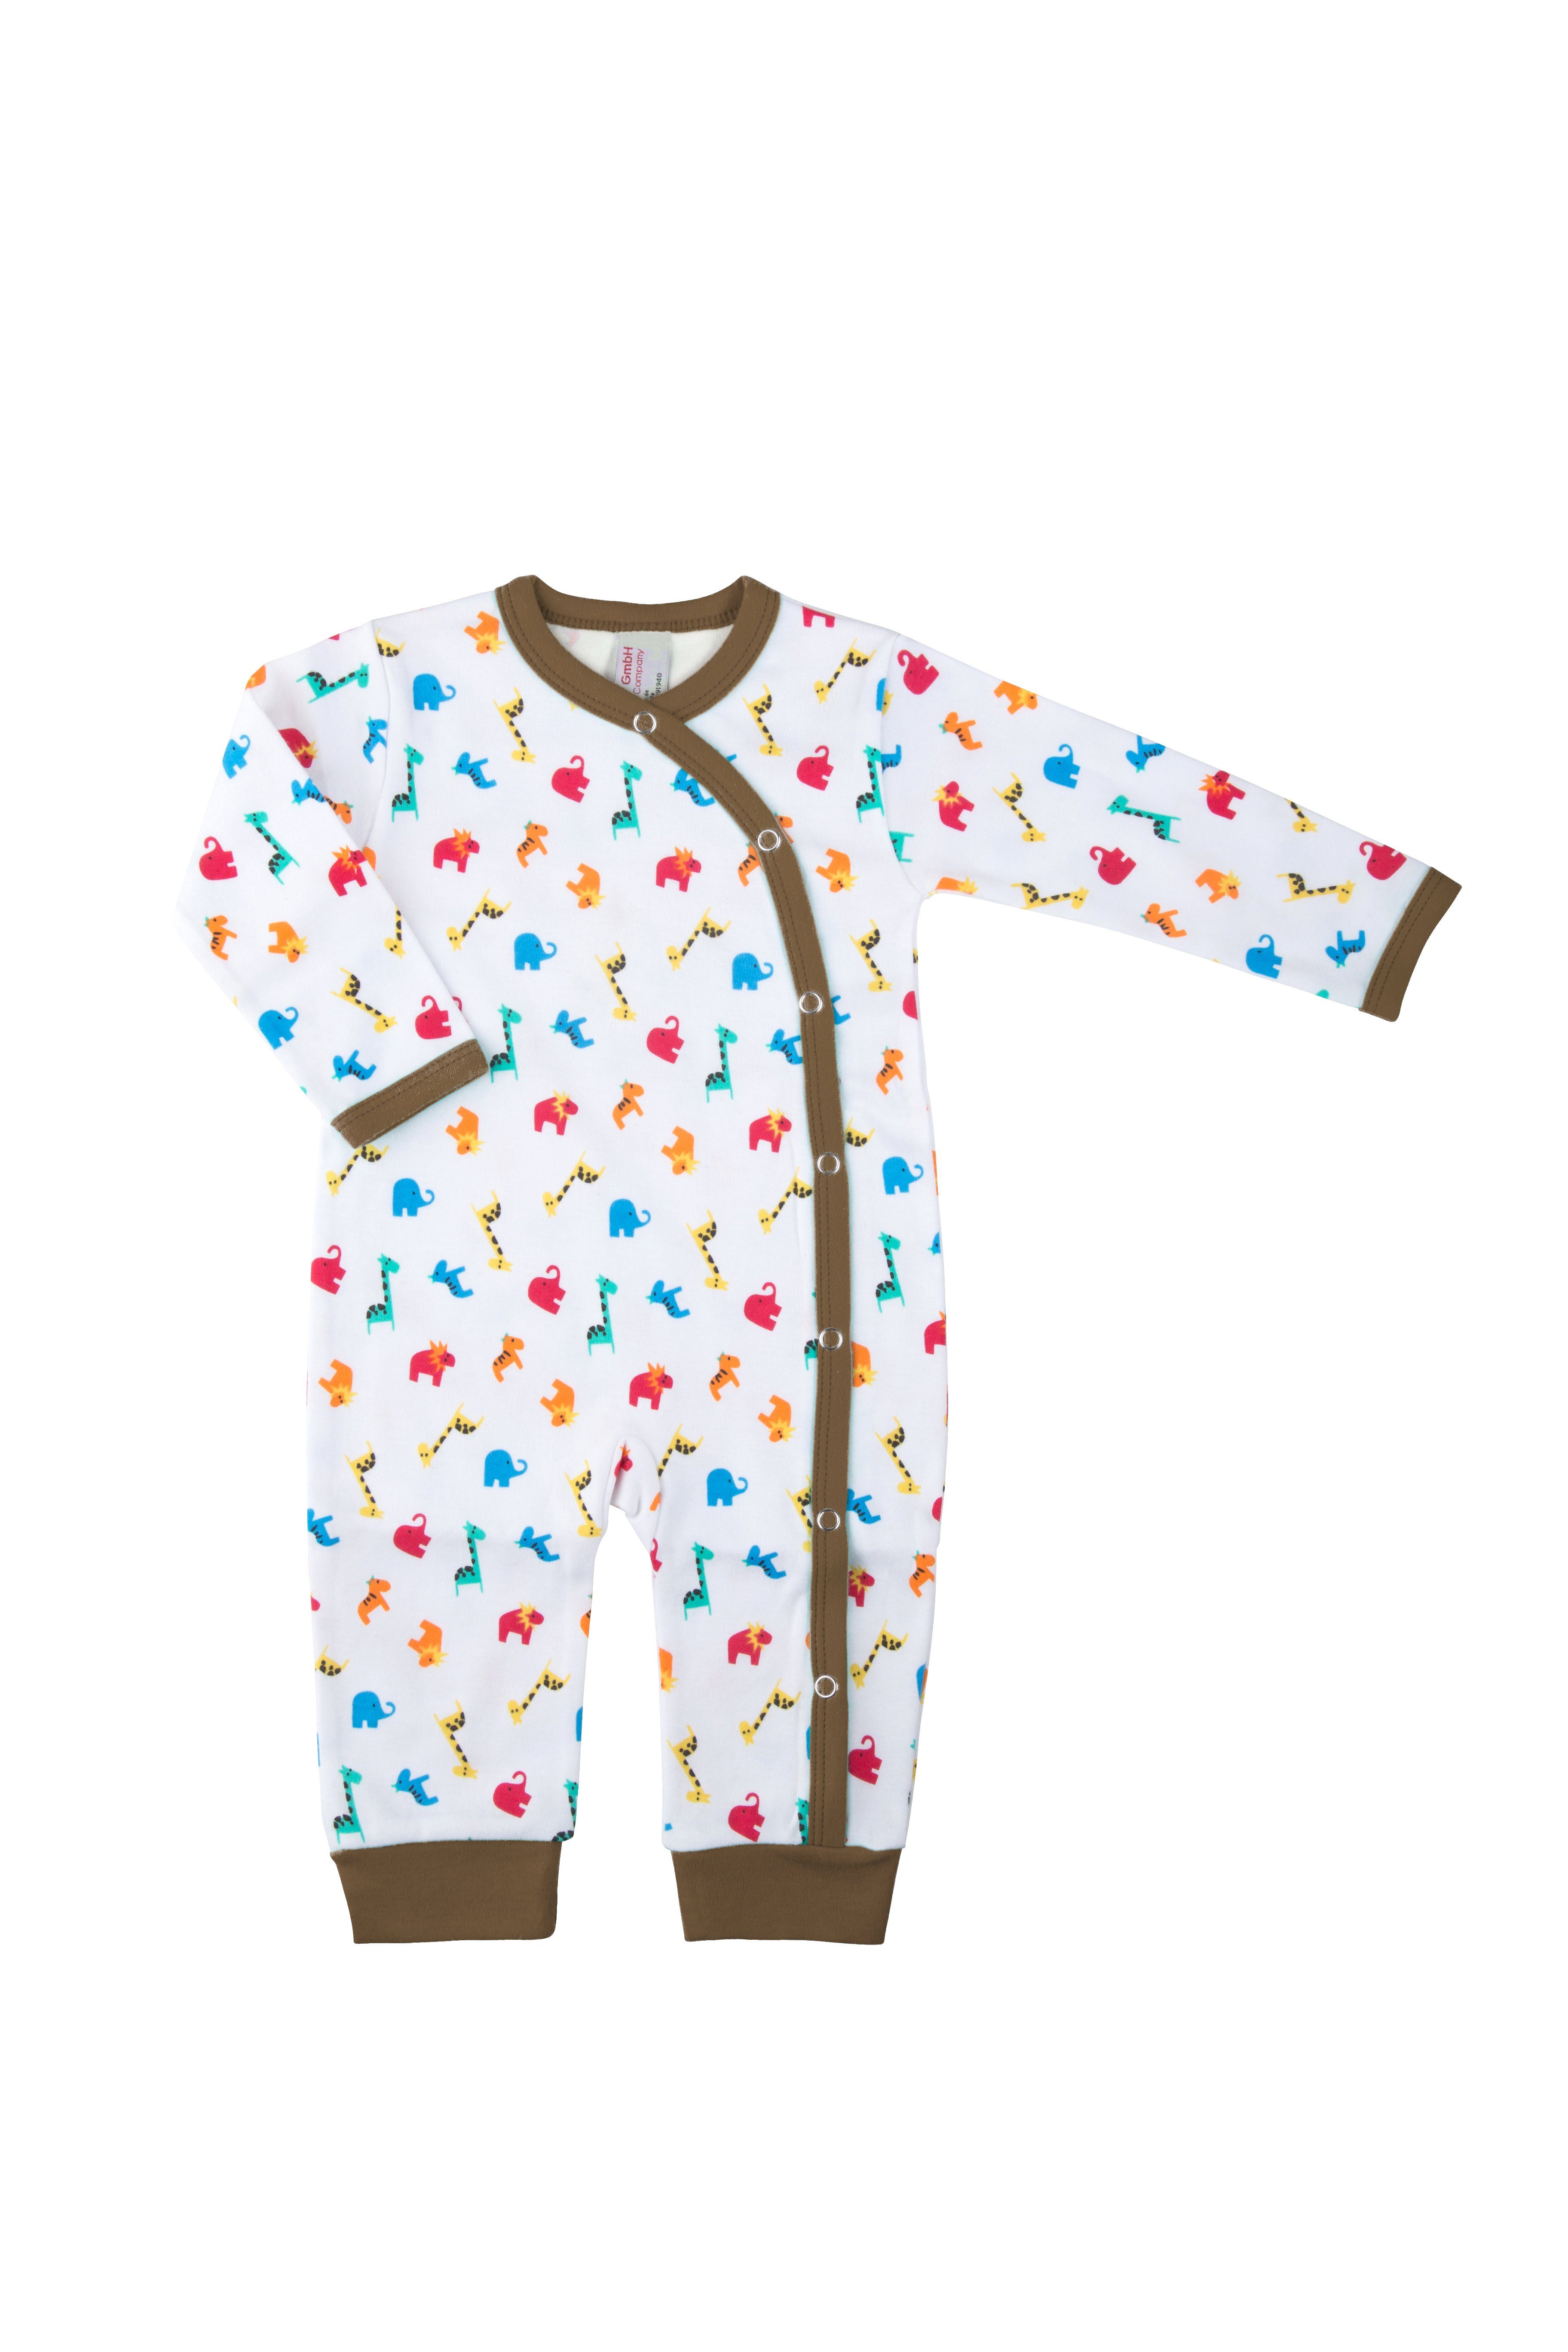 Clinotest Schlafoverall Baby Schlafanzug aus Jersey, Zootiere, Druckknöpfe Braun